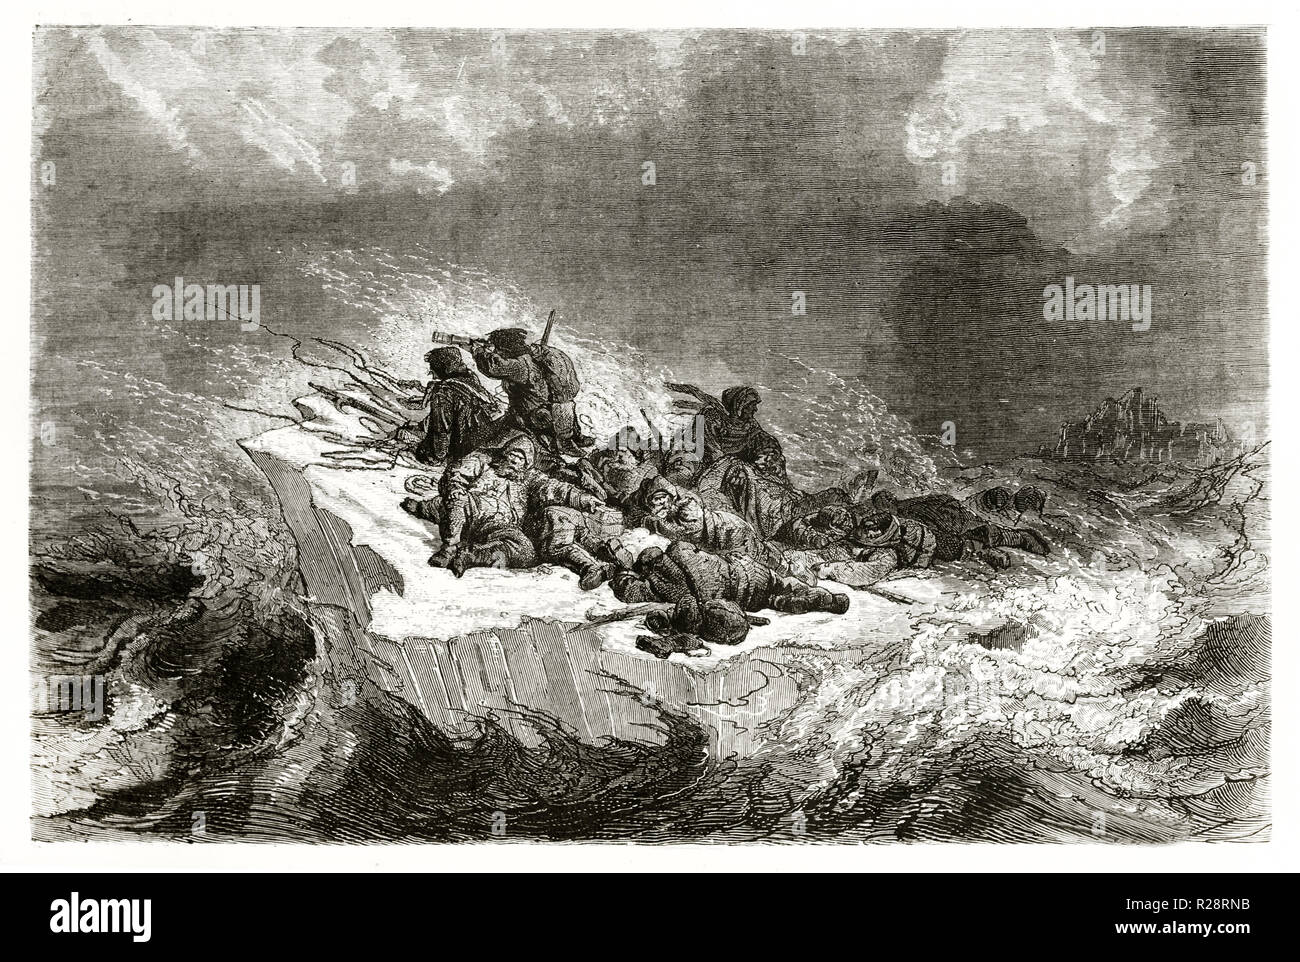 Vieille illustration d'Iemarck les marins naufragés du navire le fragment de glace, mer de Kara. Par Foulquier, publ. sur le Tour du Monde, Paris, 1863 Banque D'Images